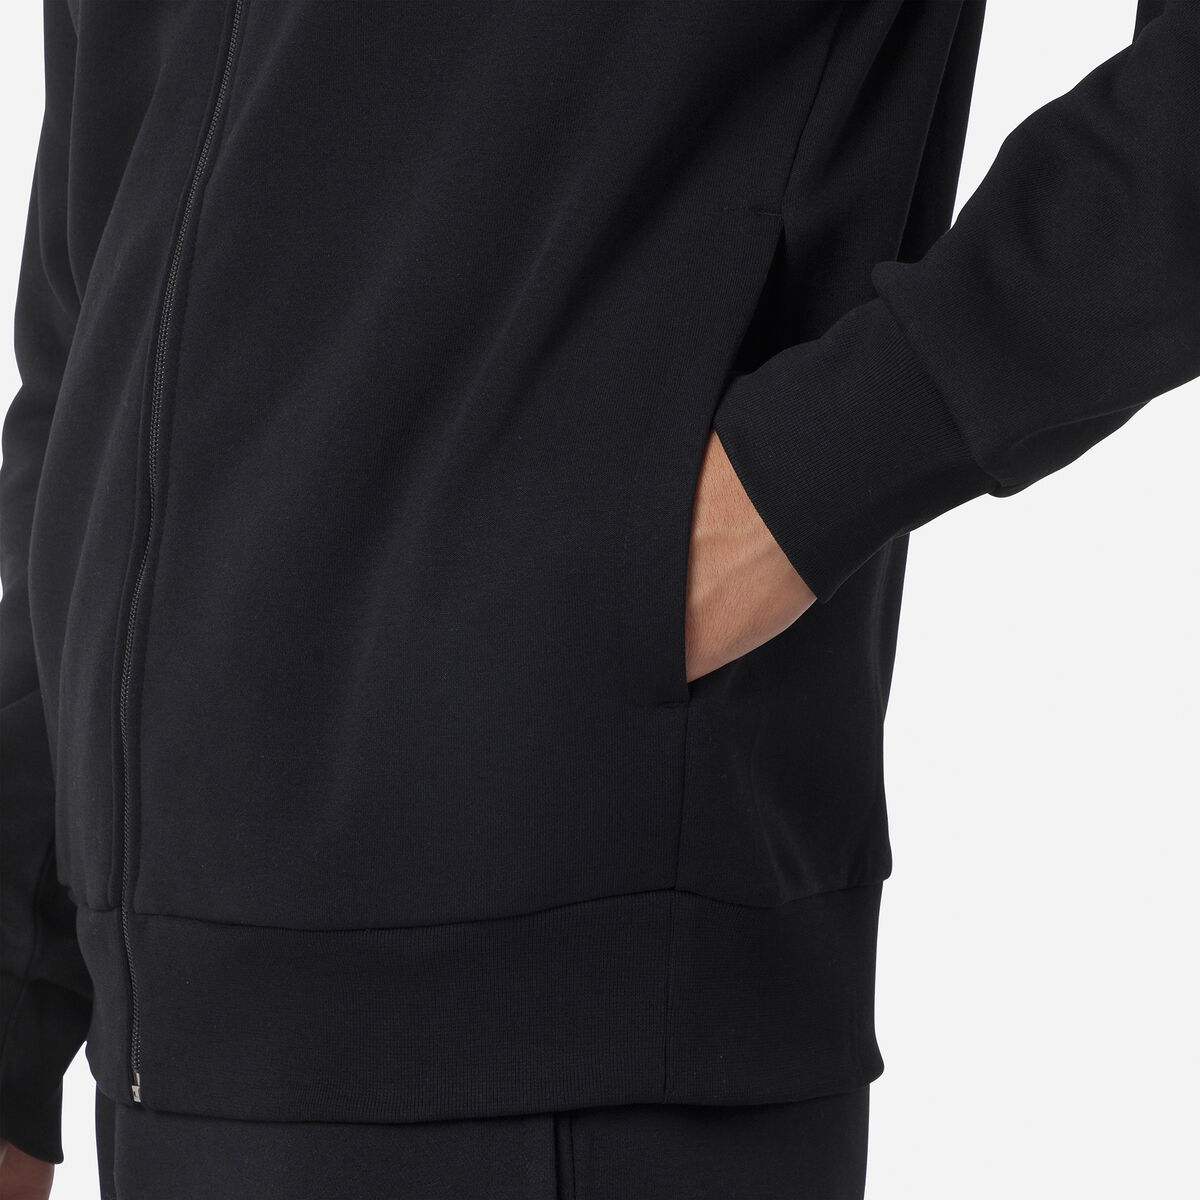 Rossignol Men's full-zip hooded logo cotton sweatshirt black